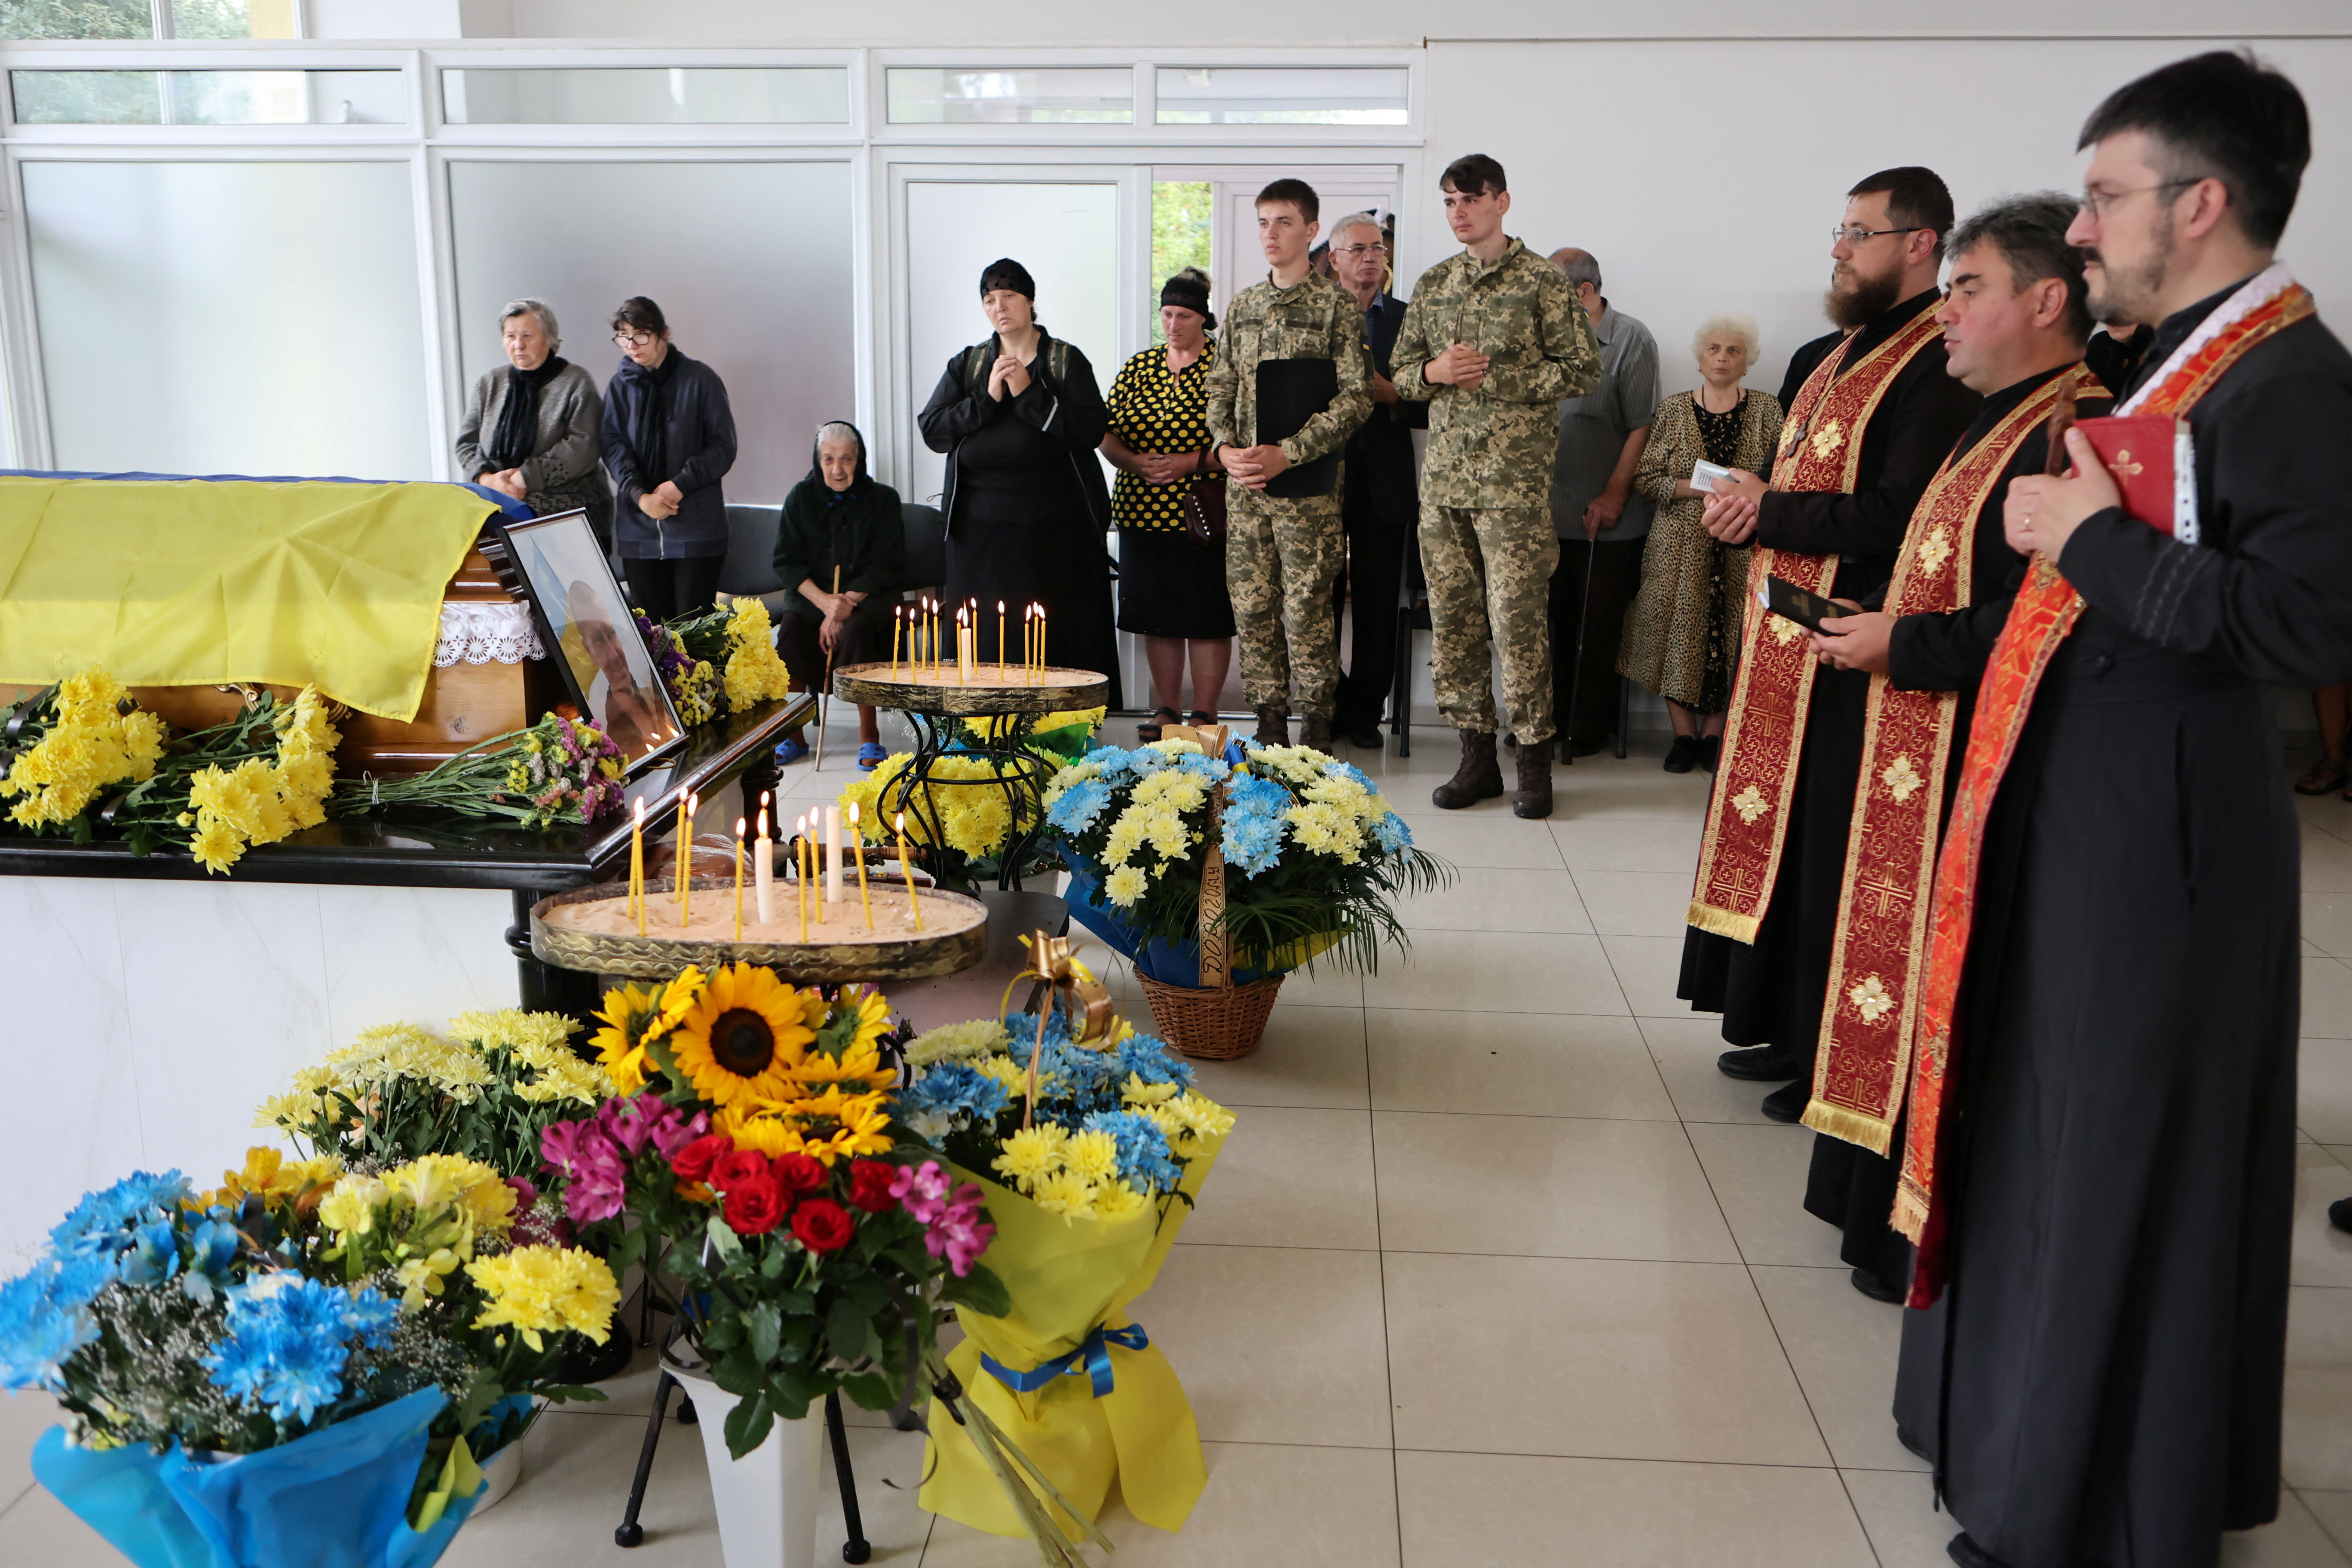 Escena del funeral del soldado ucraniano, Taras Mykytsei, muerto en combate cerca de Lysychansk. REUTERS/Yuriy Rylchuk